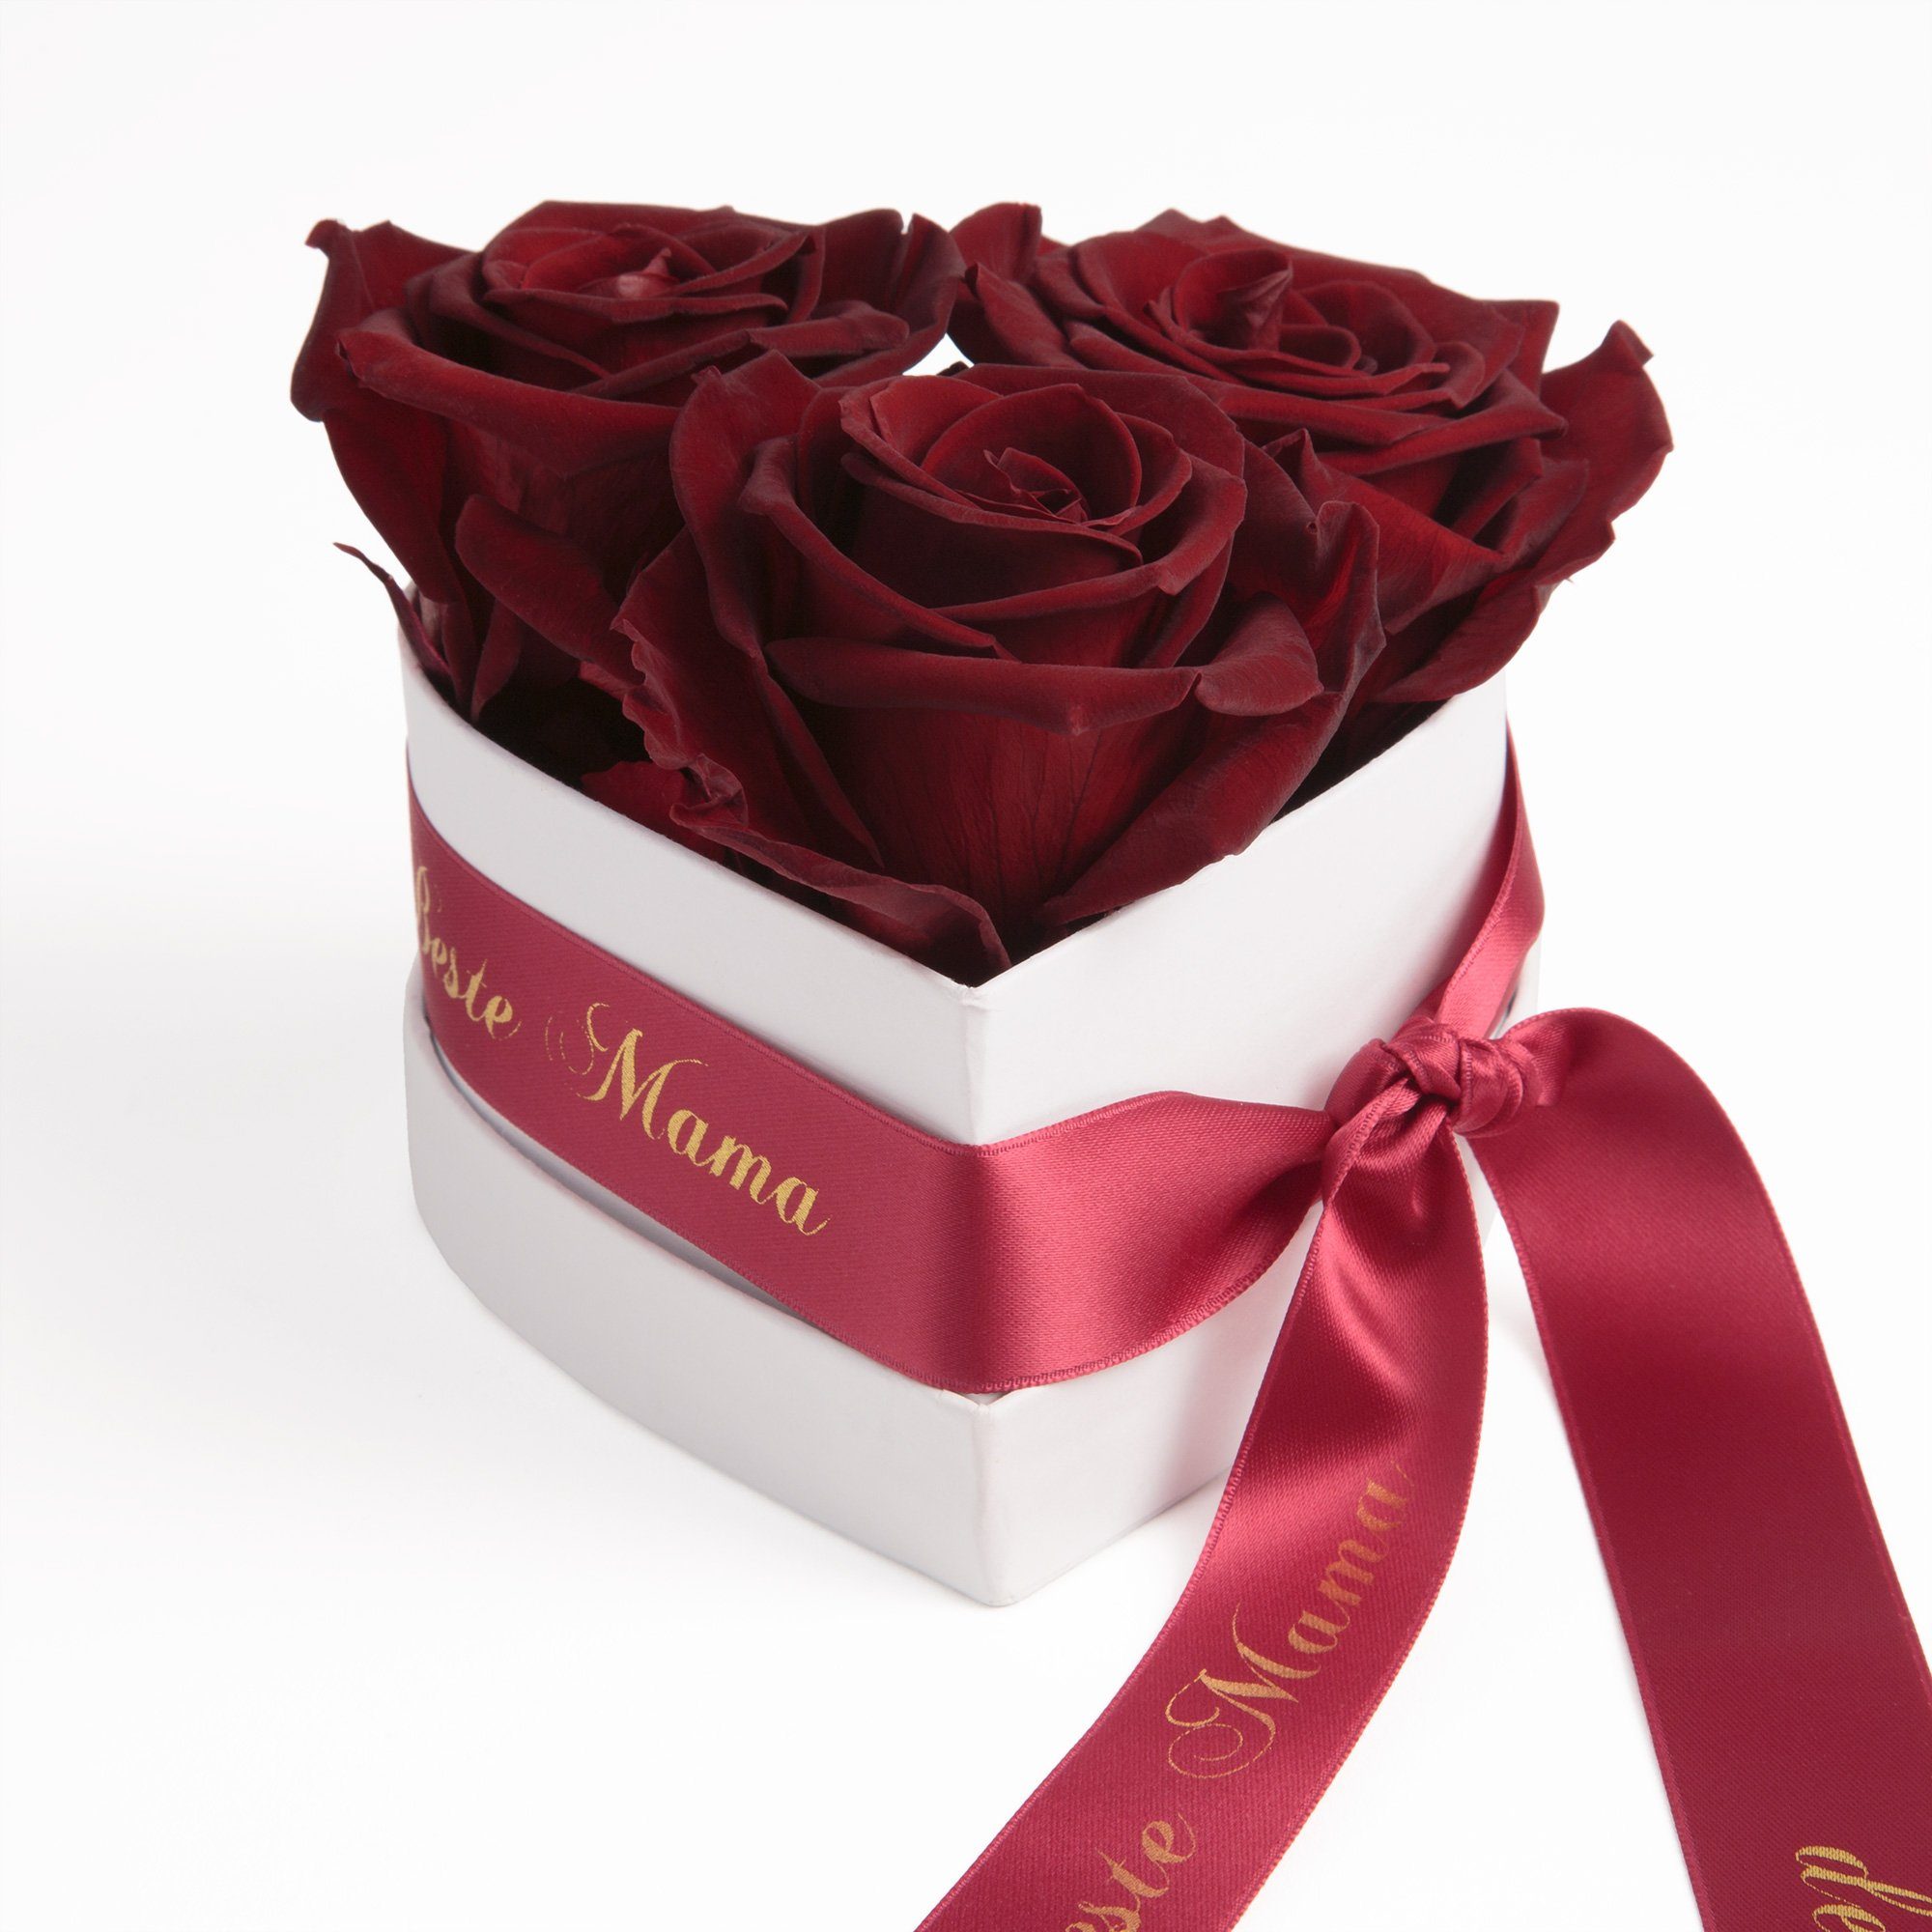 Rosen Mama Infinity Geschenk Beste Rosenbox 3 SCHULZ Herz Jahre cm, für echte Burgundy Höhe Heidelberg, Rose, die 10 Blumen ROSEMARIE der Kunstblume Welt haltbar 3